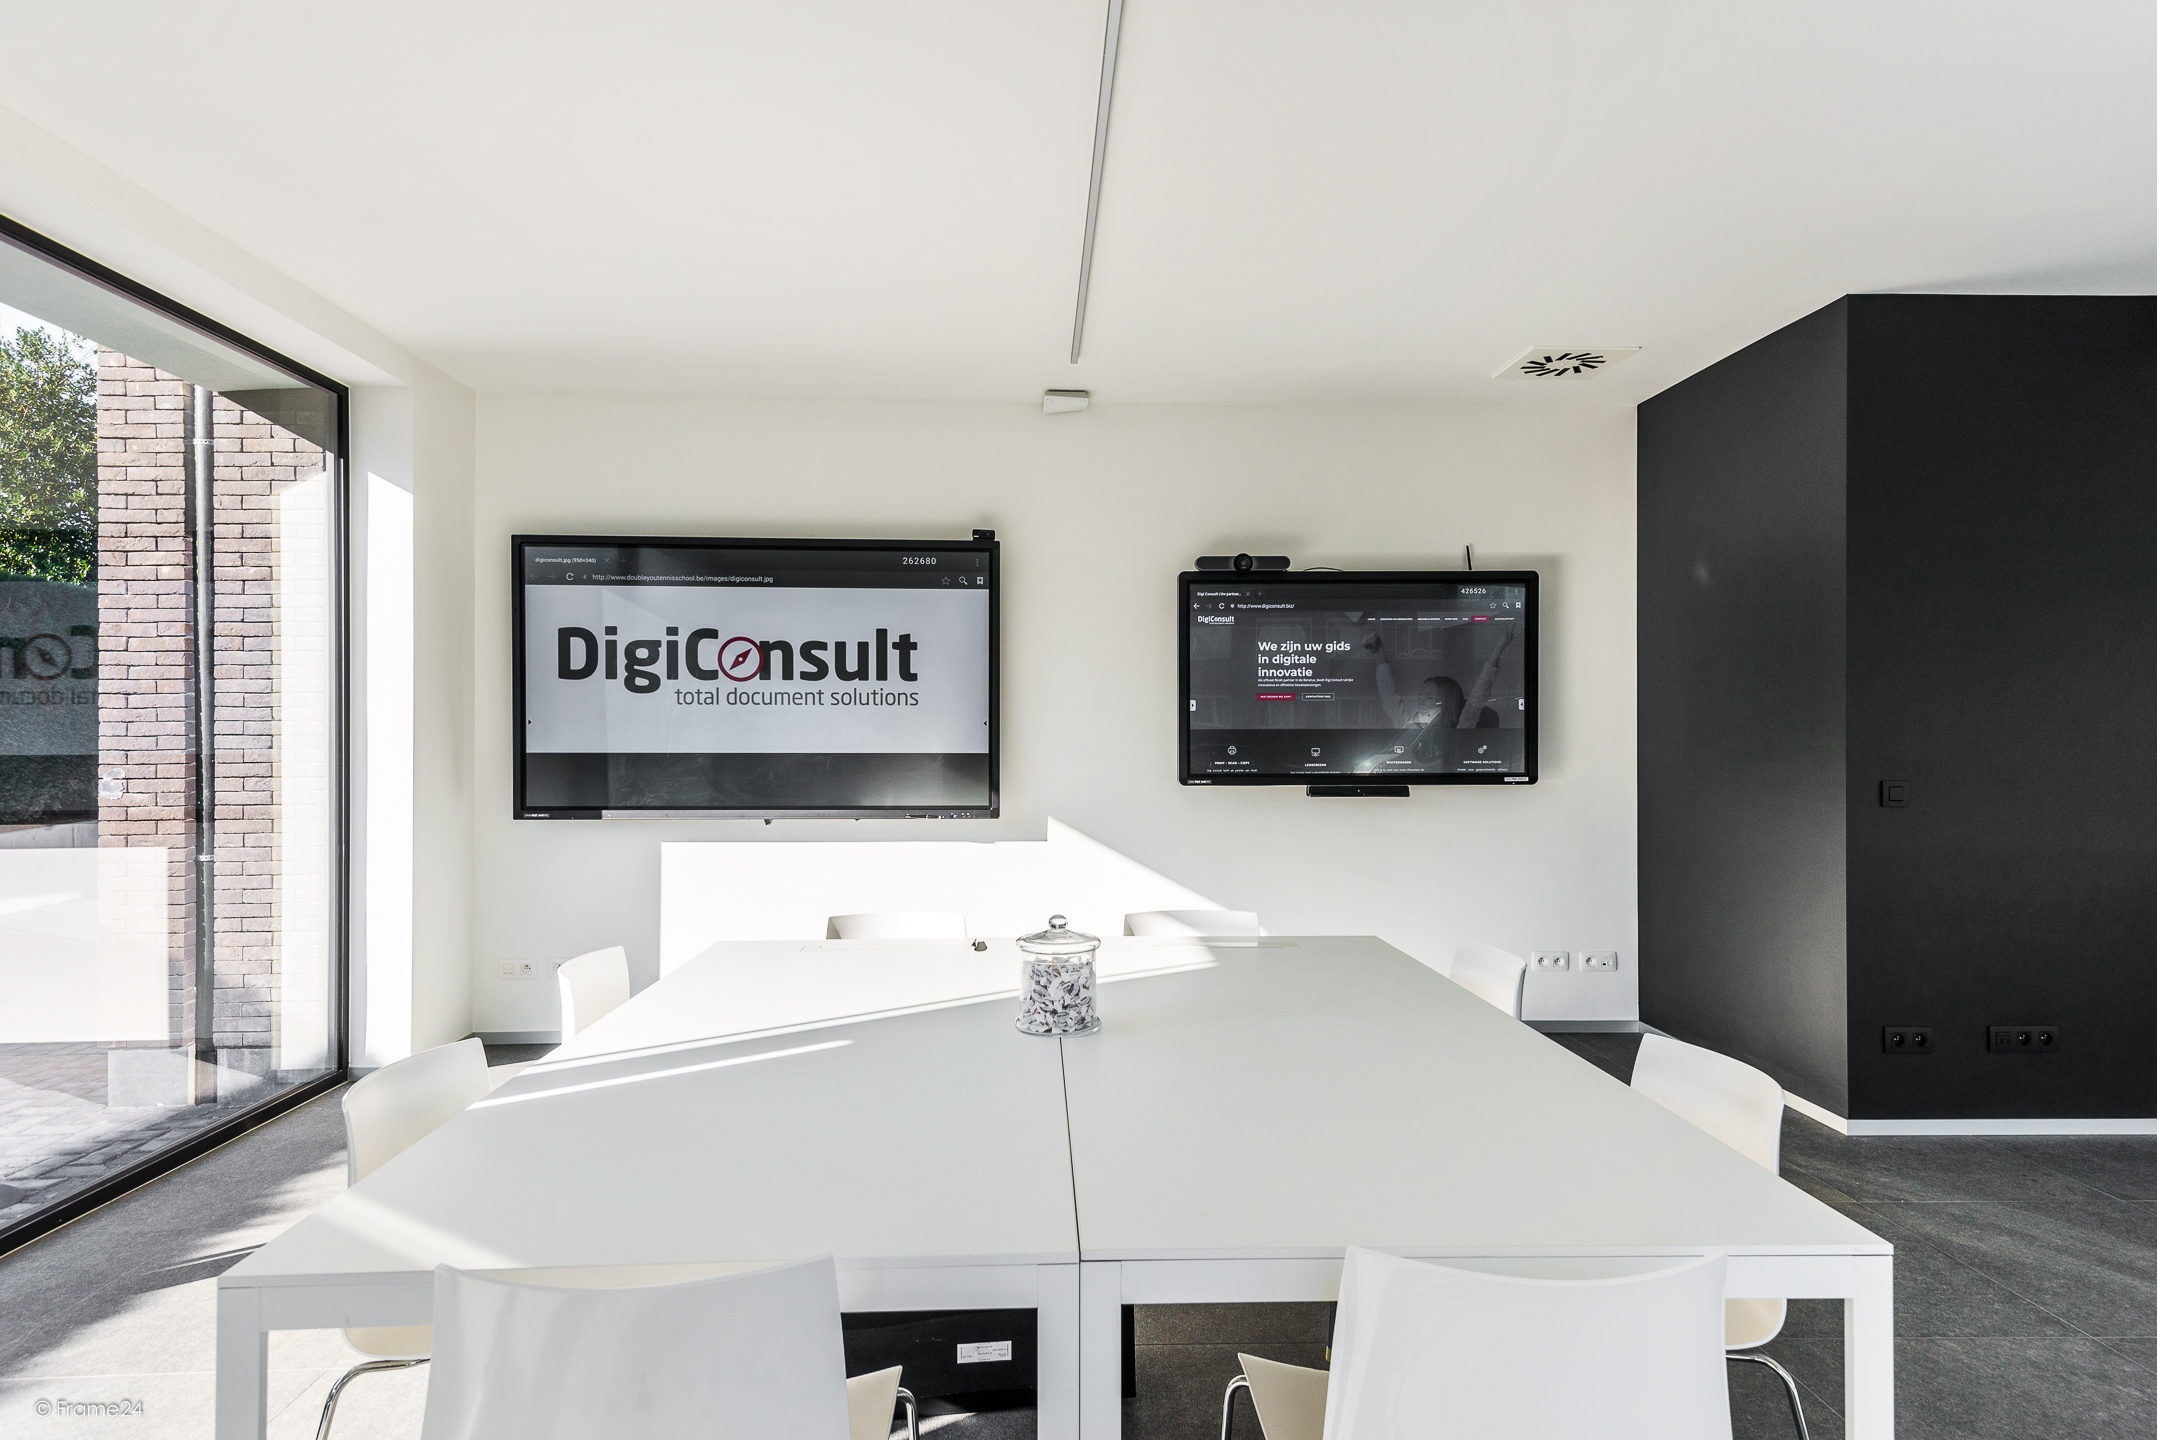 SDM begeleidt de aandeelhouders van Digi Consult bij verkoop aan Classo Technology Group